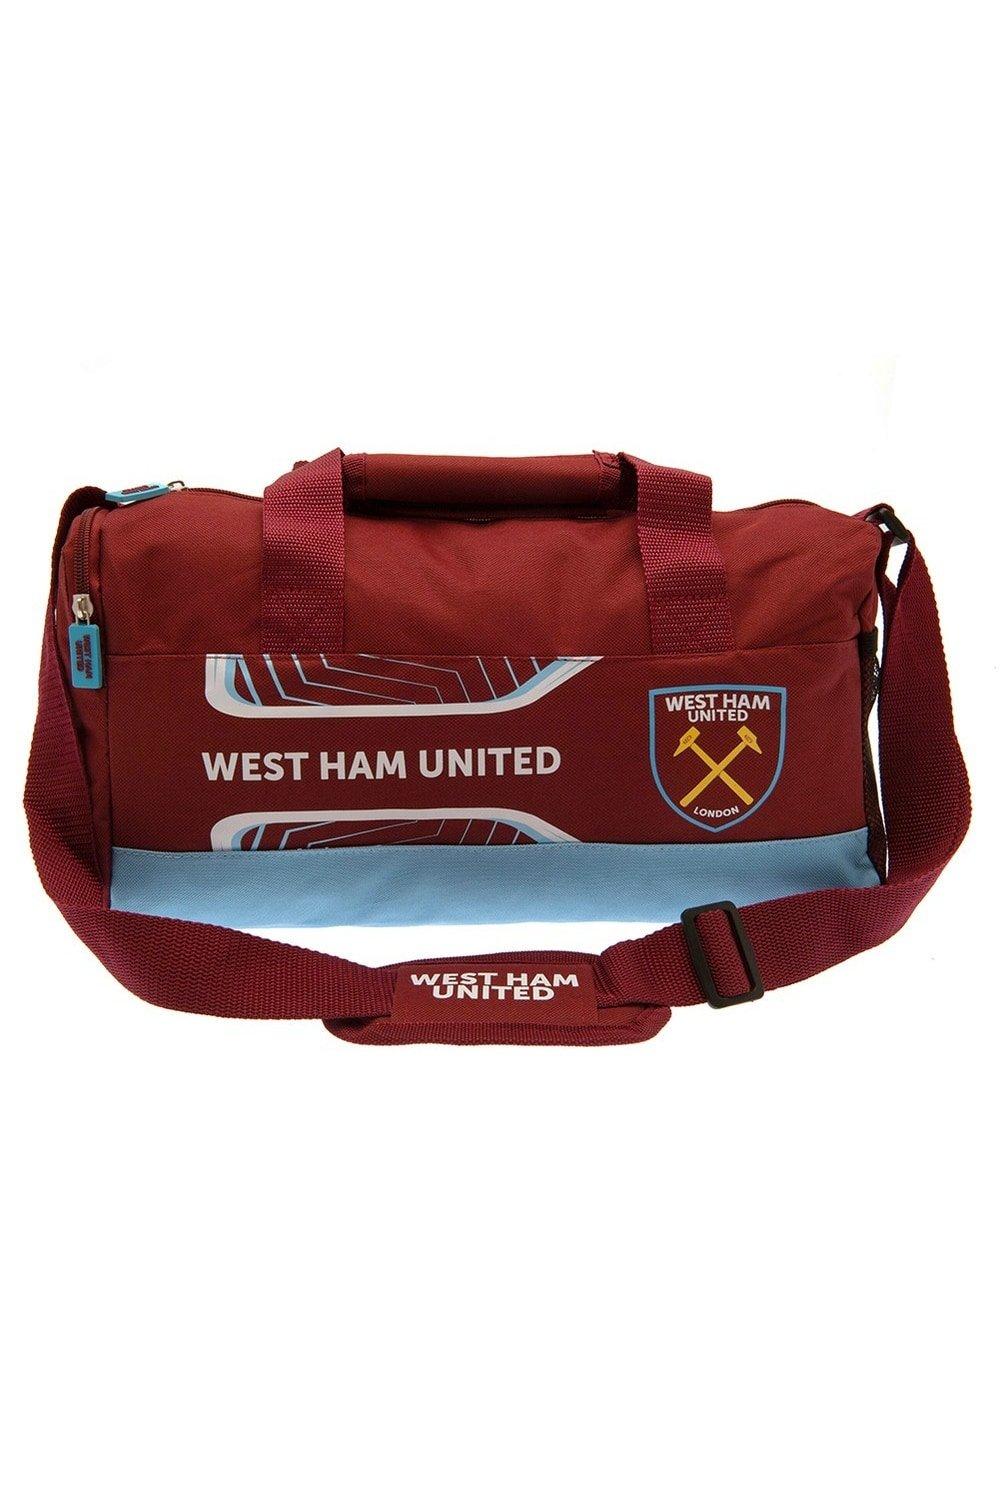 Спортивная сумка Flash West Ham United FC, красный аксессуар для грилей tima пм3638 подставка на мангал 36 38см высота 15 20см